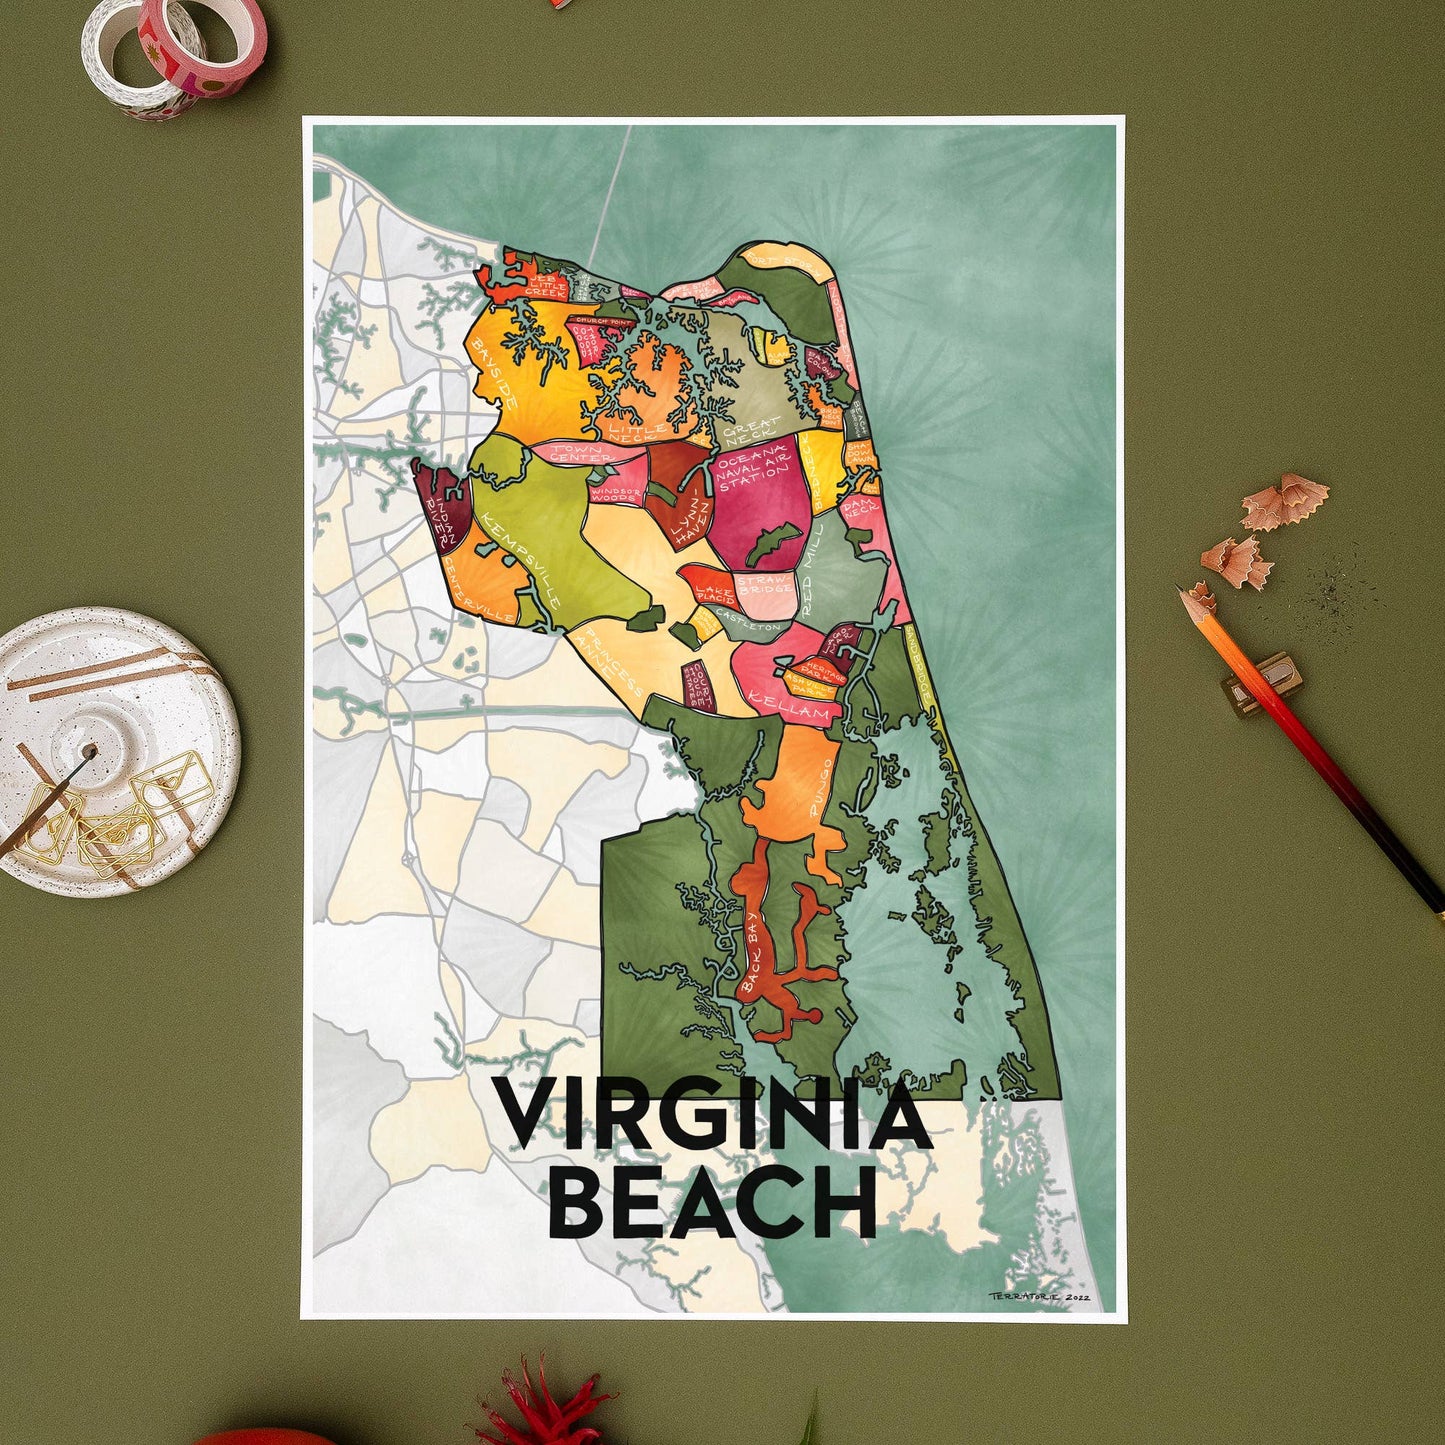 Virginia Beach Neighborhoods Map Art Print 13"x19" Home Decor Terratorie Maps + Goods   